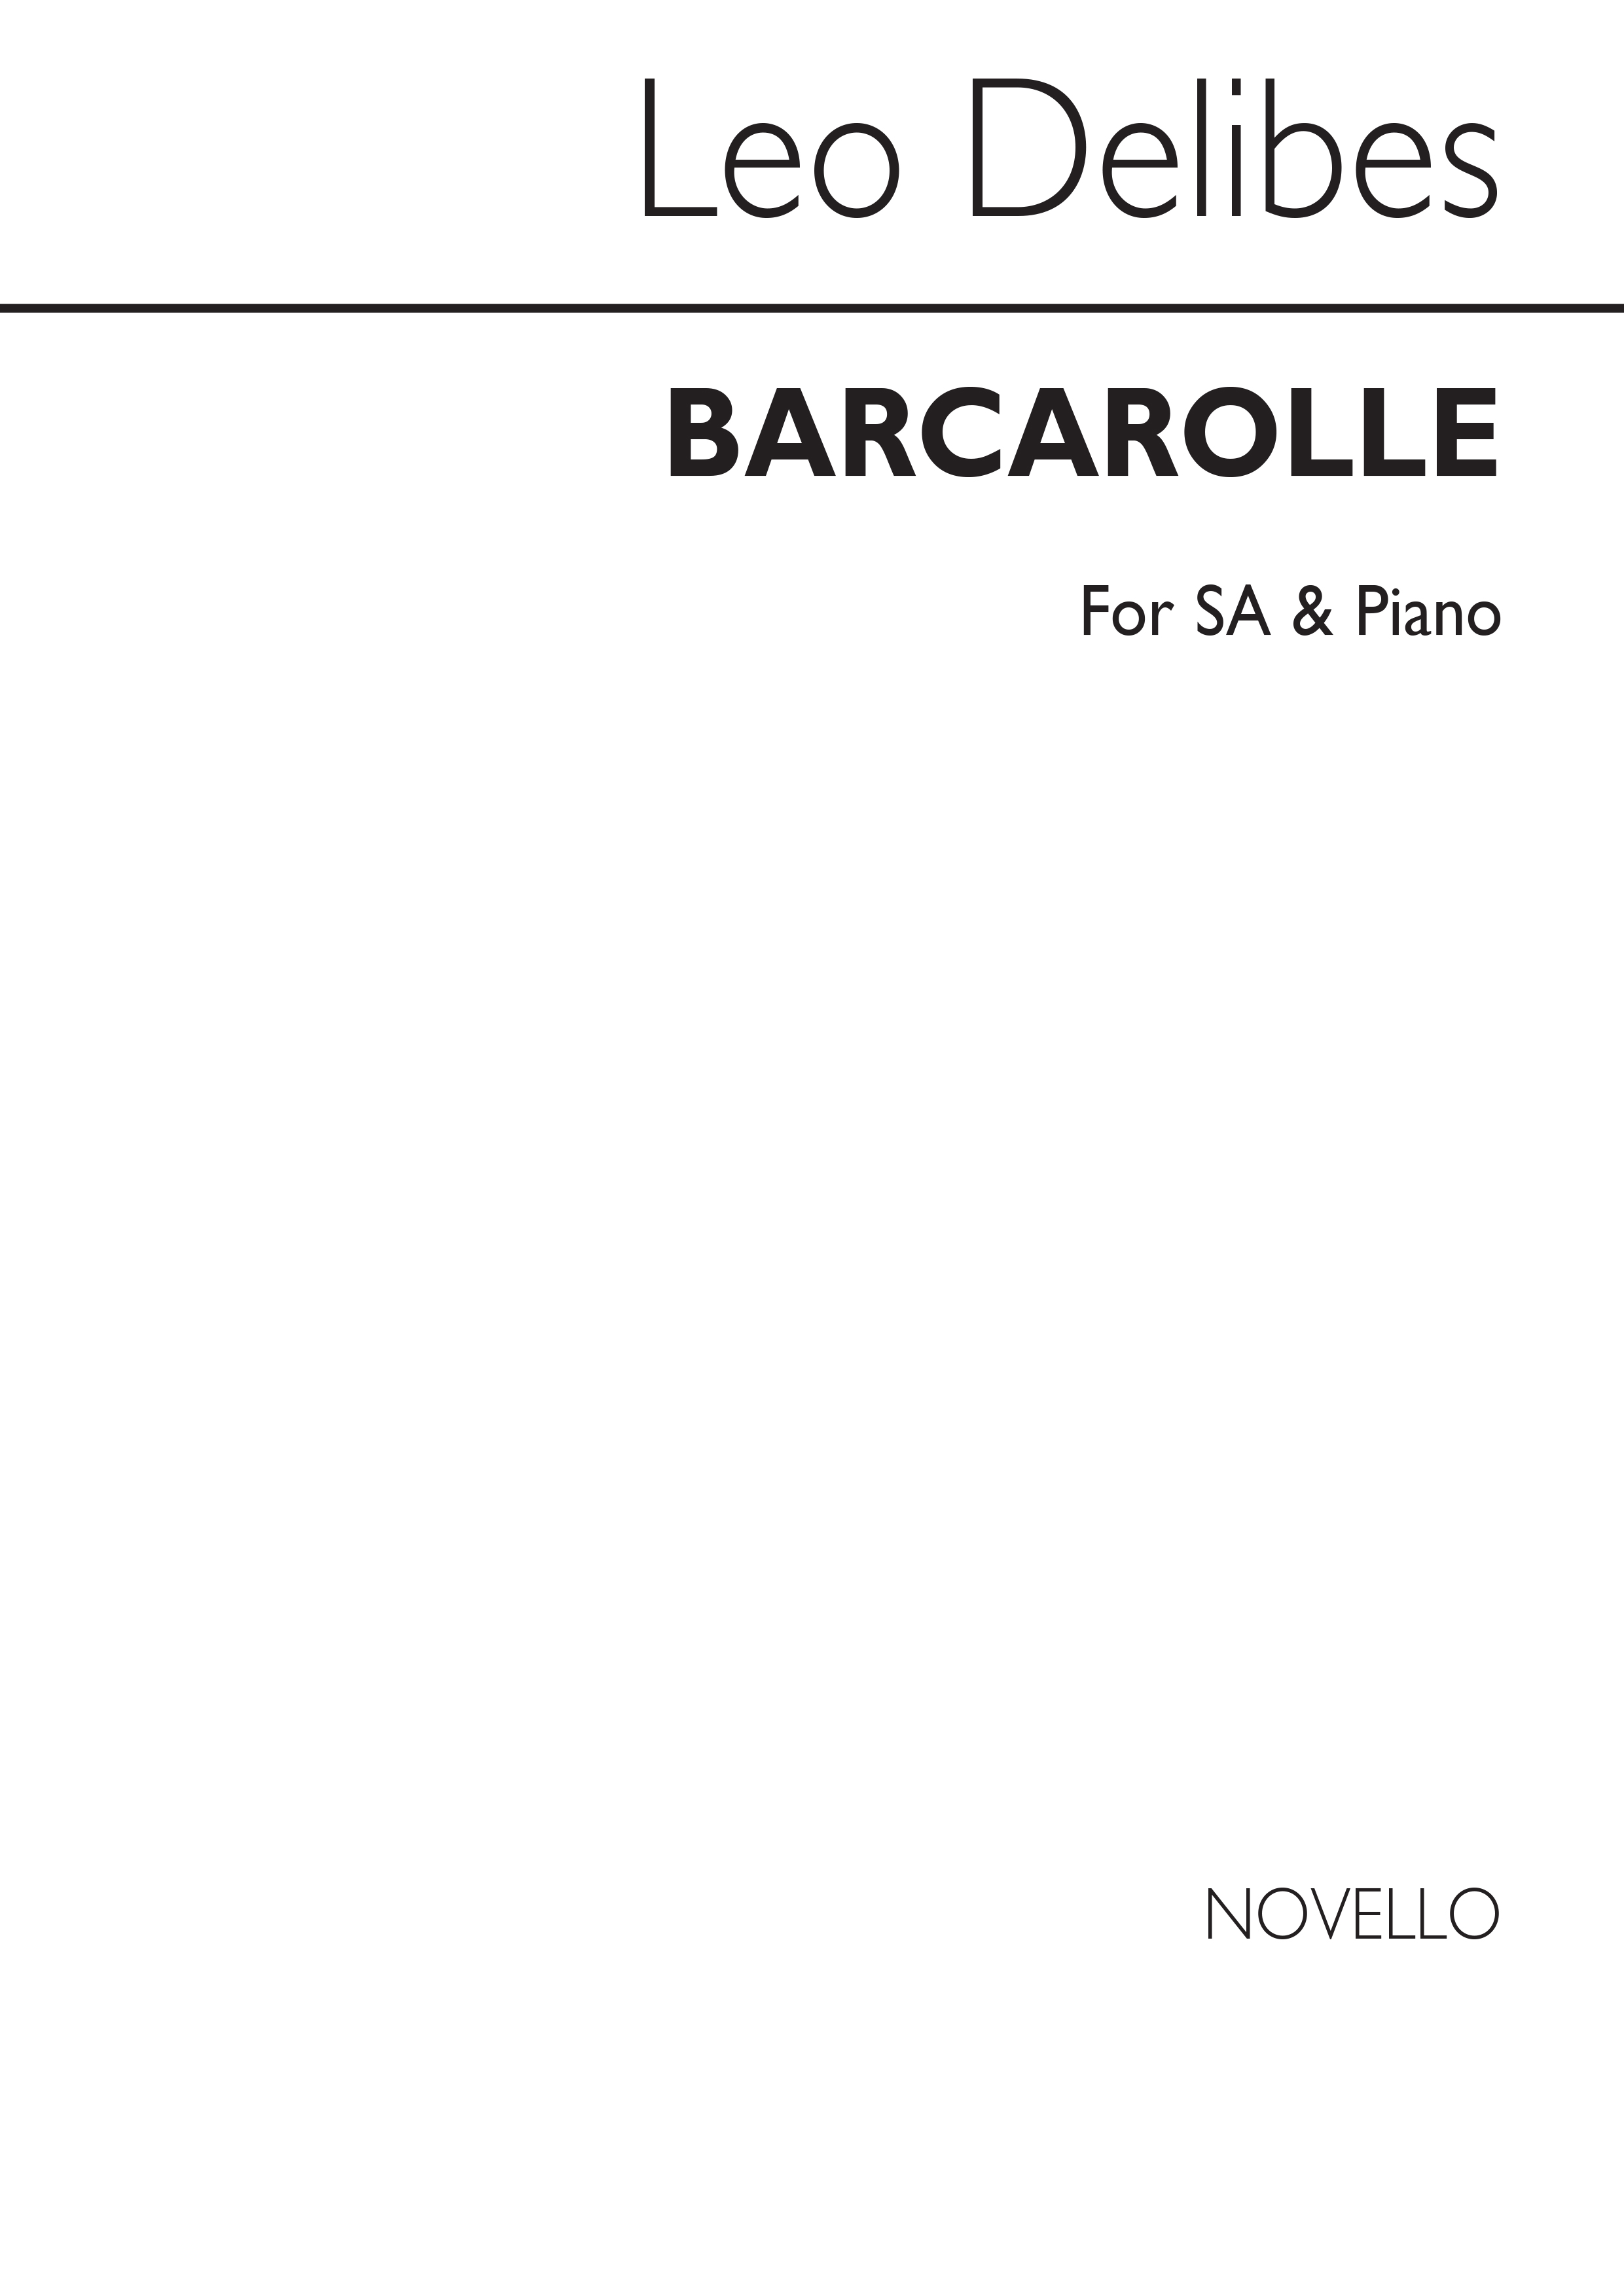 Delibes Barcarolle Soprano/Alto/ Piano